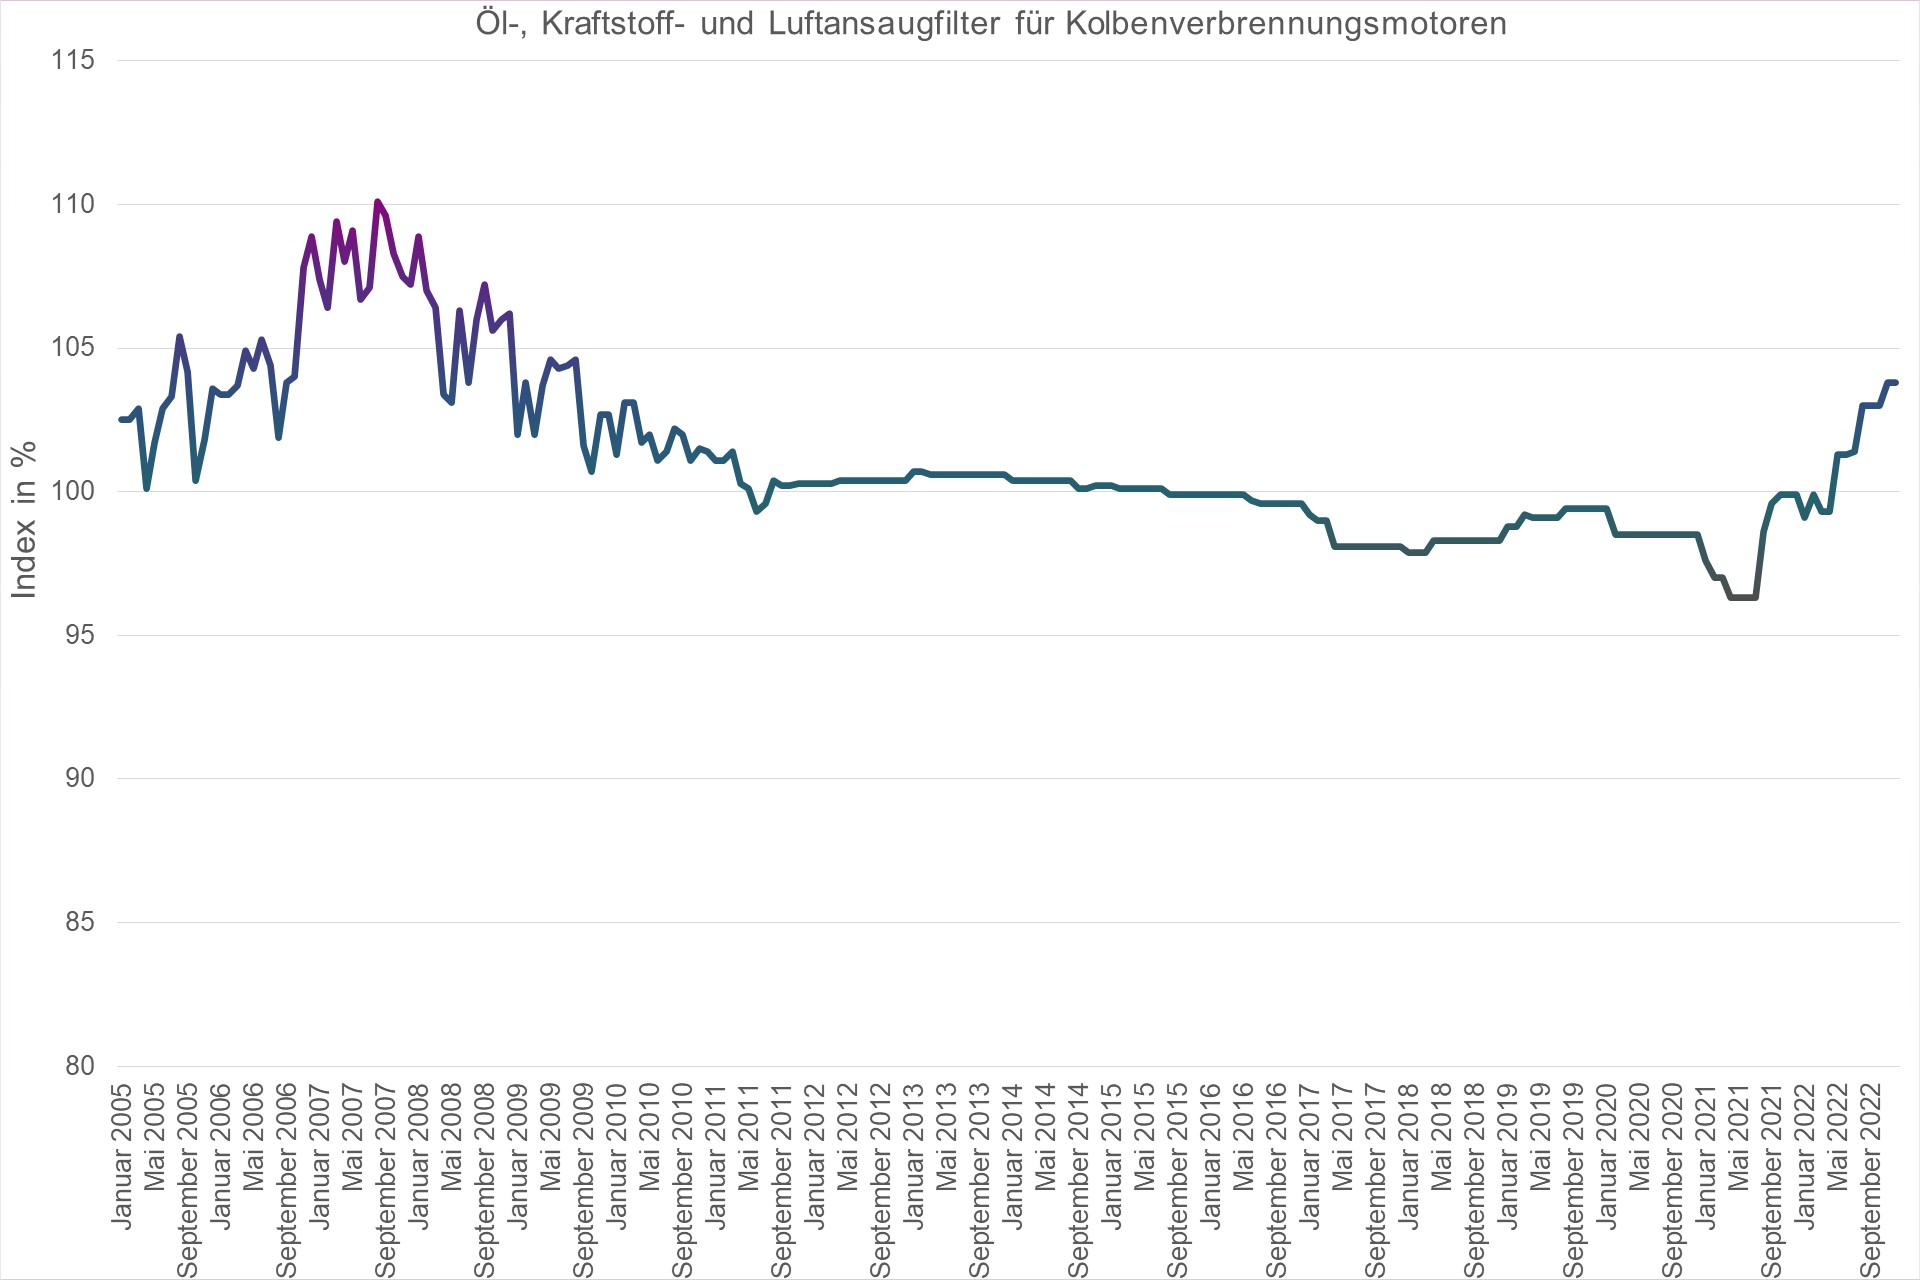 Grafik Preisindex Ouml;l-, Kraftstoff- und Luftansaugfilter für Kolbenverbrennungsmotoren